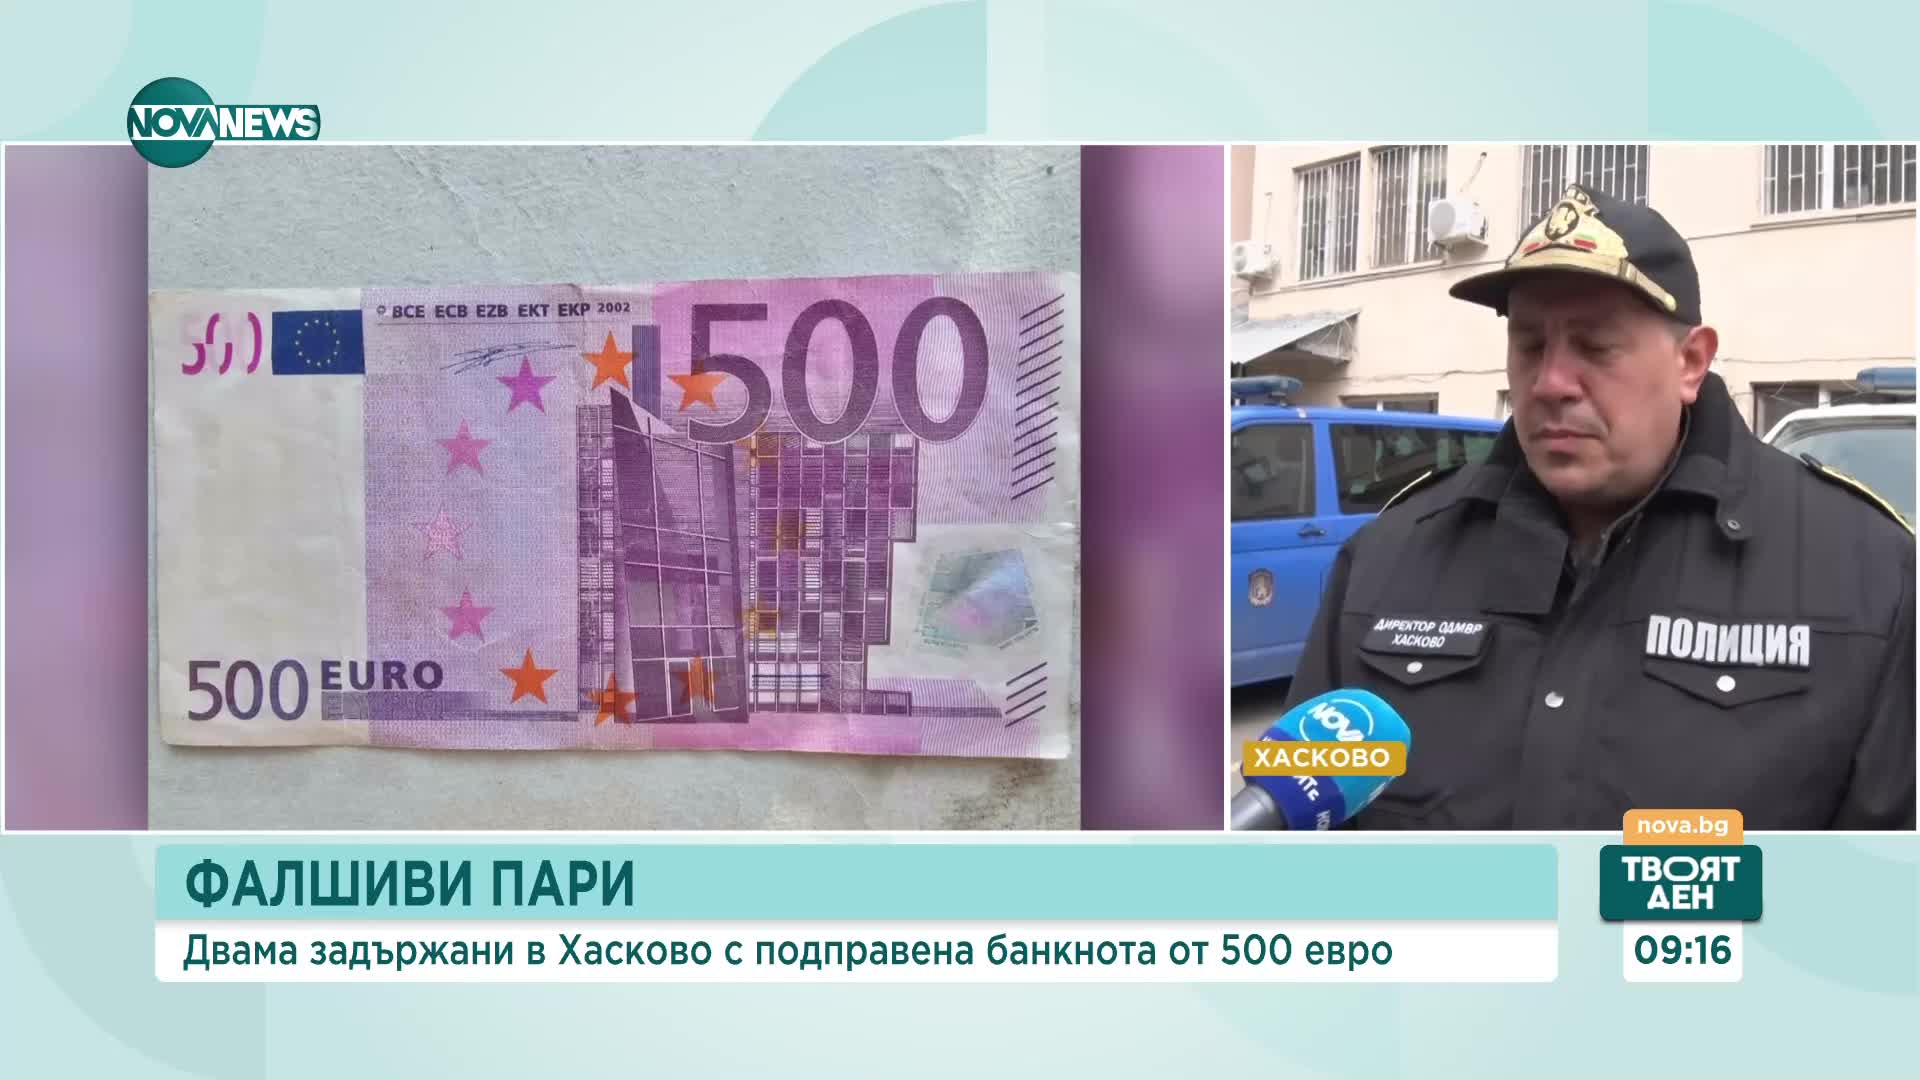 Двама младежи са задържани при опит за плащане с фалшива банкнота от 500 евро